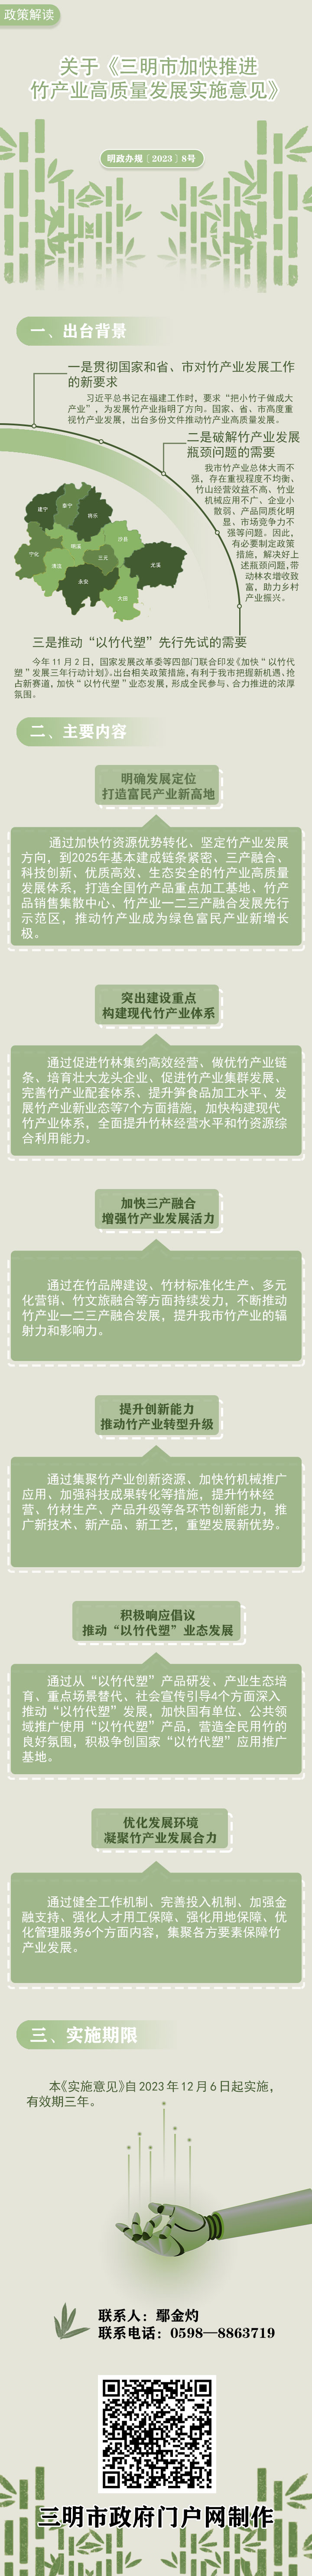 关于《三明市加快推进竹产业高质量发展实施意见》的政策解读.jpg